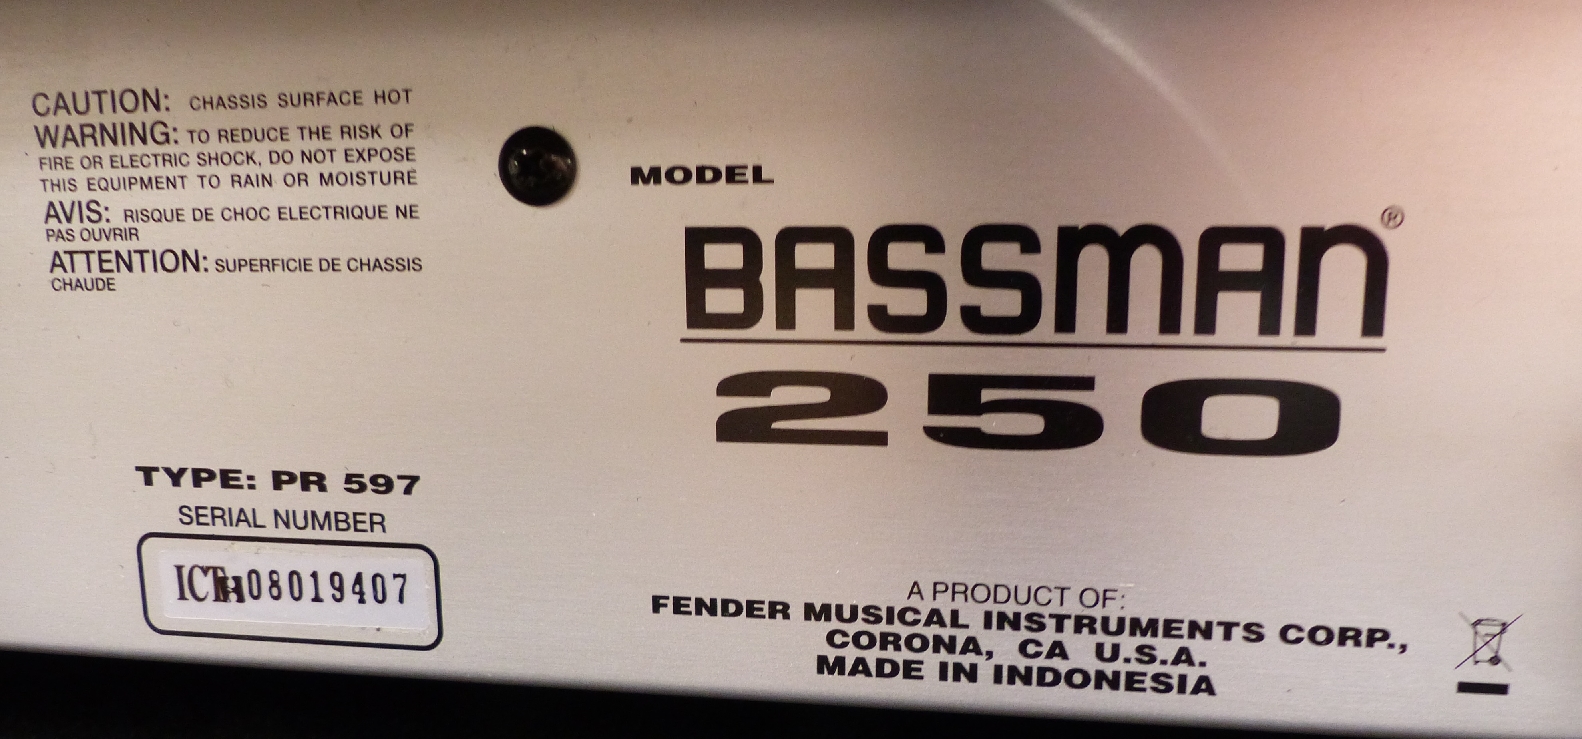 Fender bass amplifier Bassman 250 - Image 3 of 3